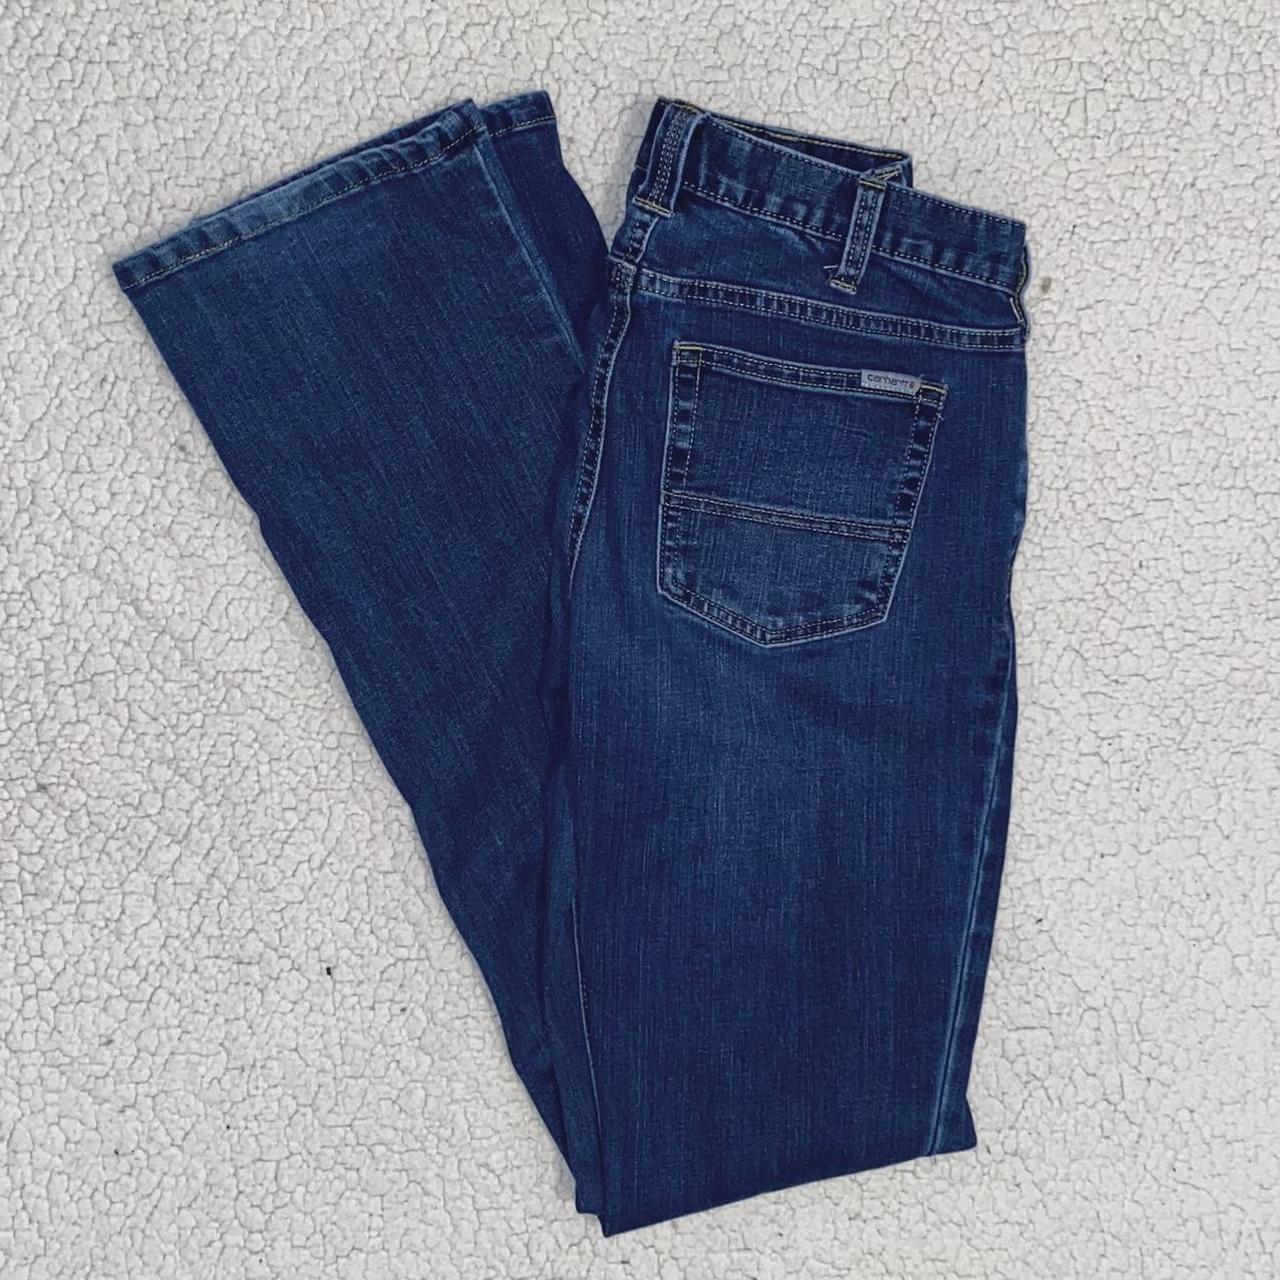 carhartt slim fit boot cut jeans 👖 -size 2 Tall -no... - Depop